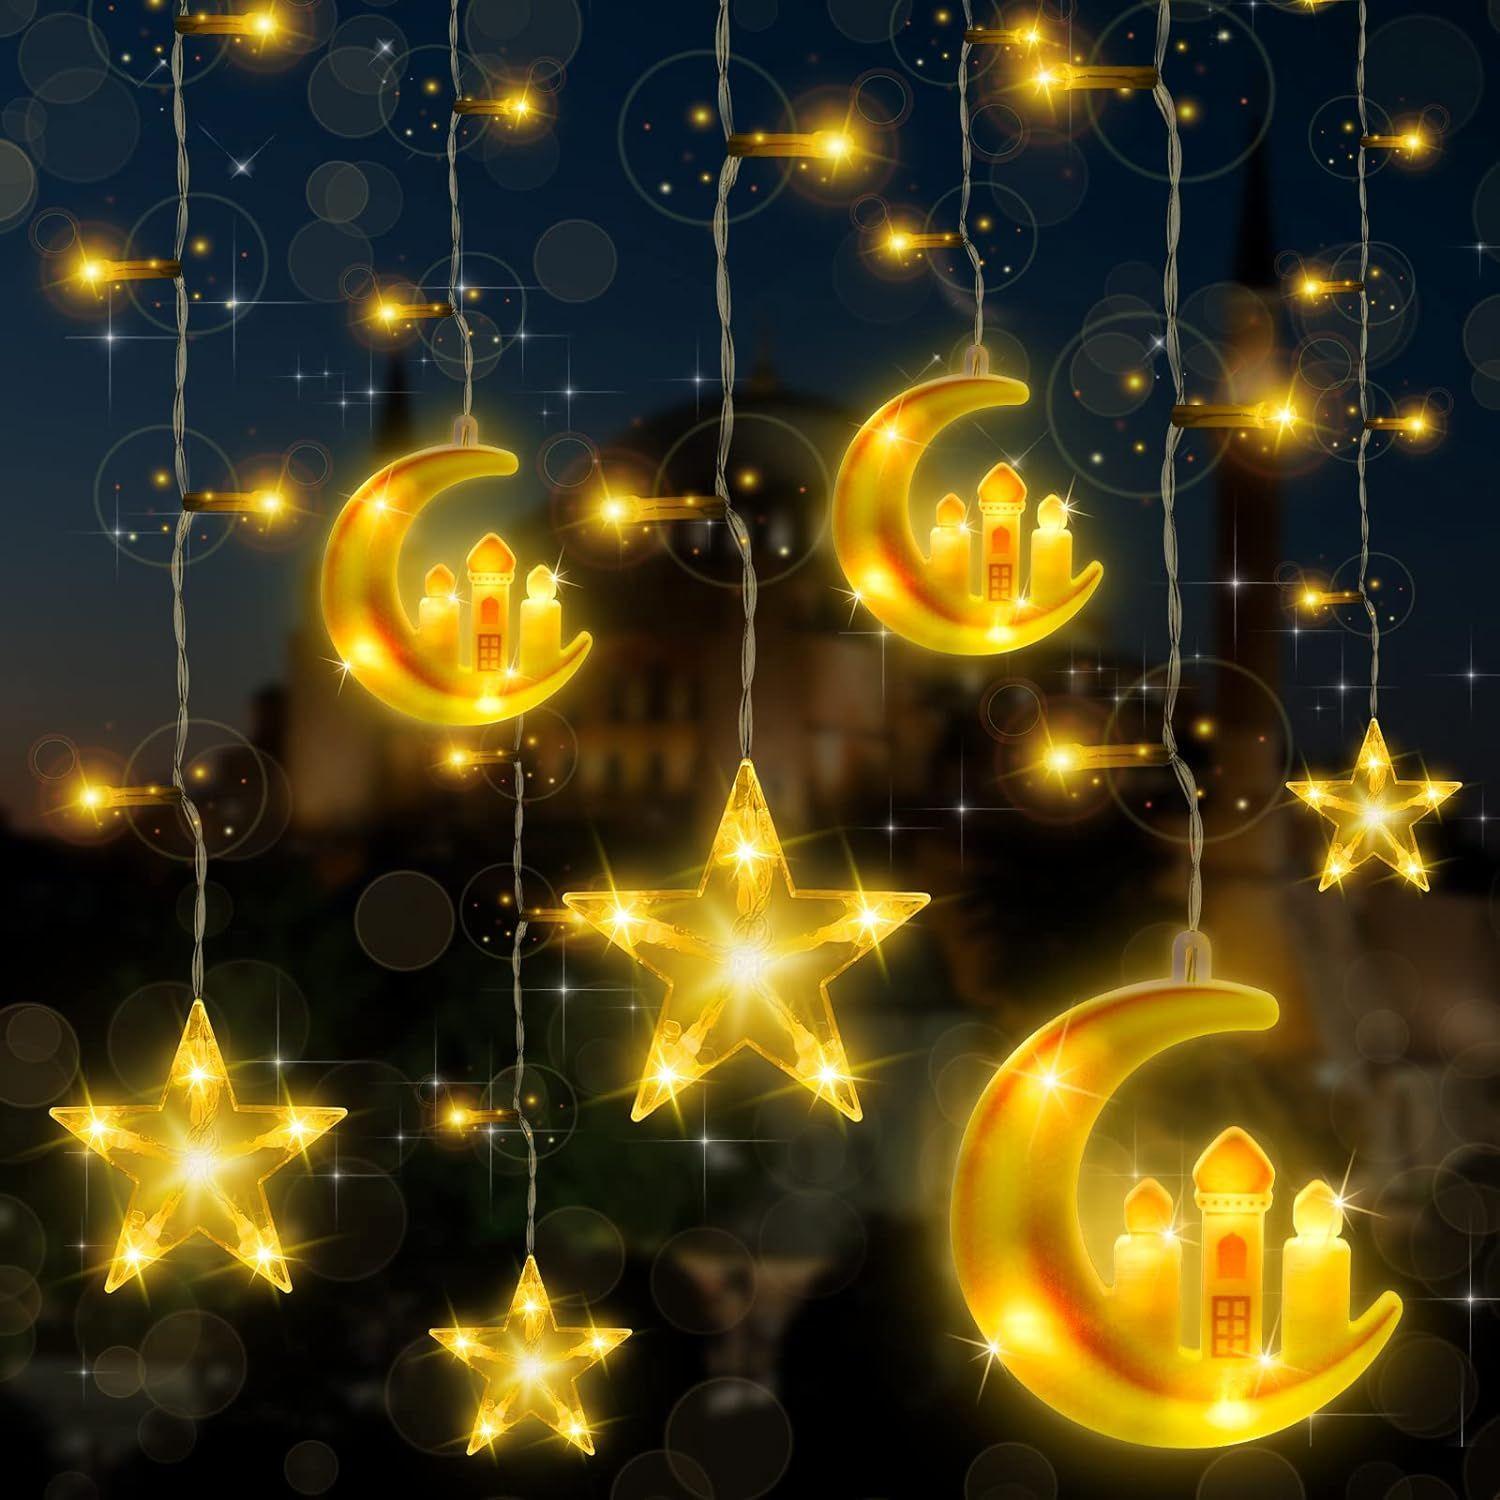 3m 20 LED Eid Al-Fitr LED Étoile et Lune Guirlandes Lumineuses Ramadan  Festival Décoration Lampes (